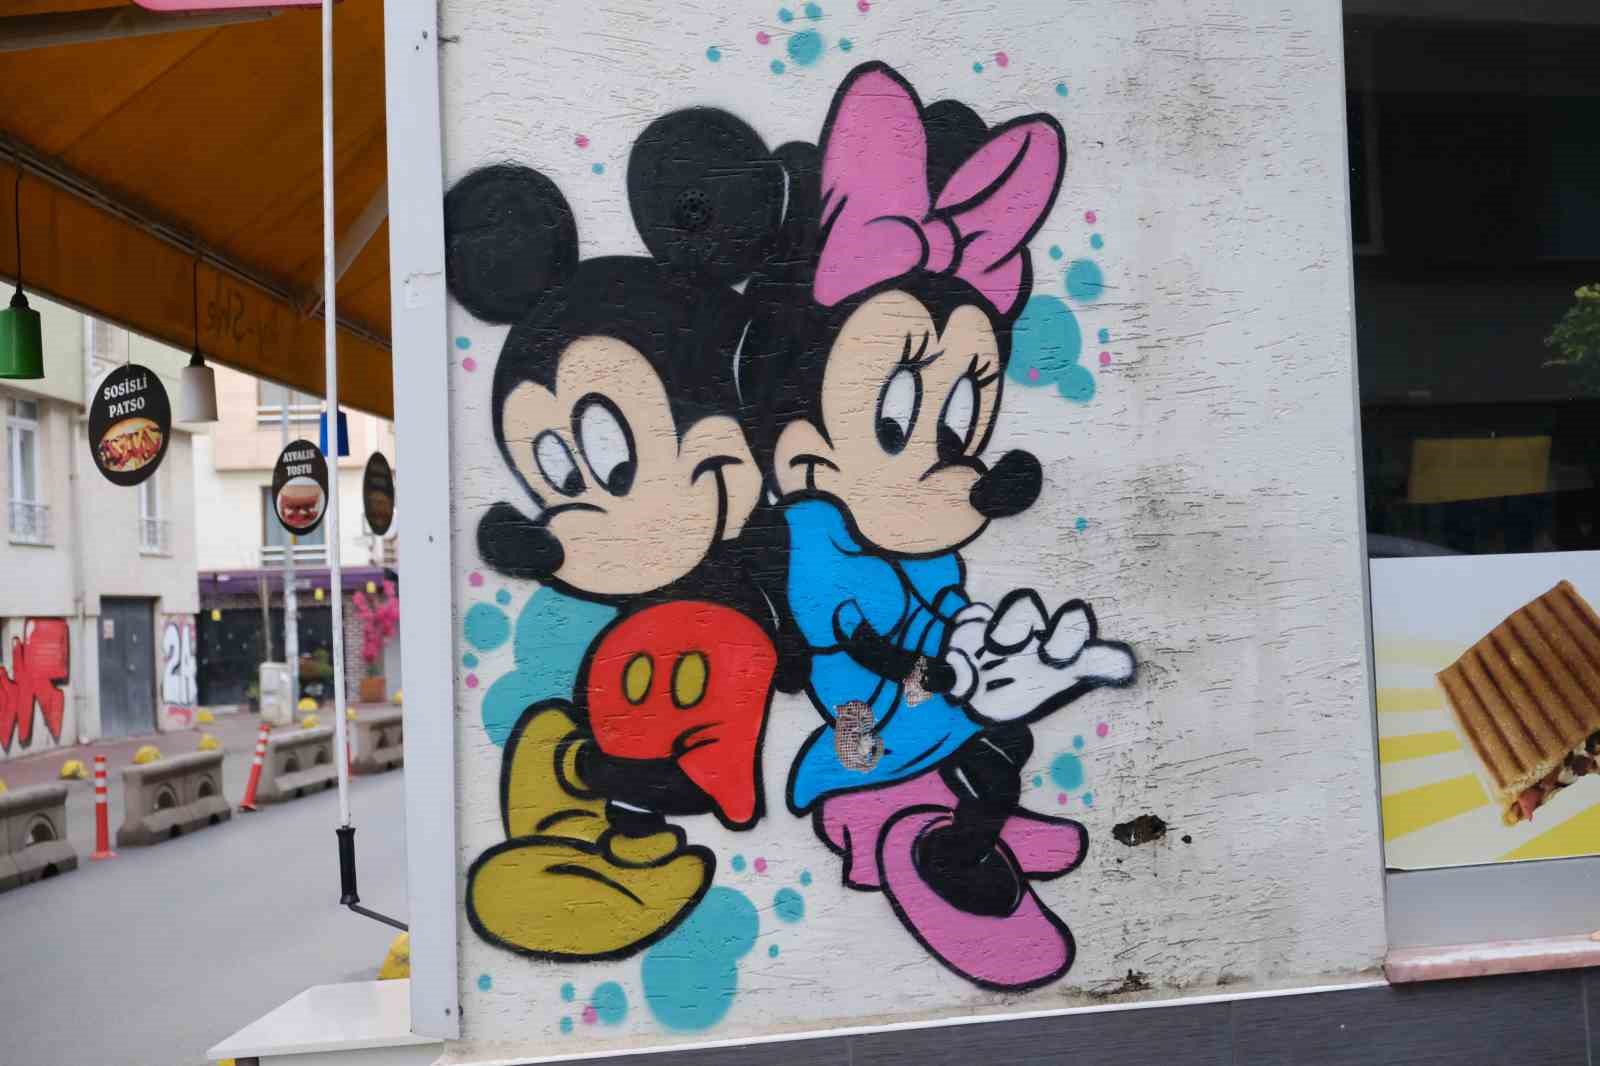 Eskişehir’de duvarlara çizilen grafitiler vatandaşın ilgisini çekiyor